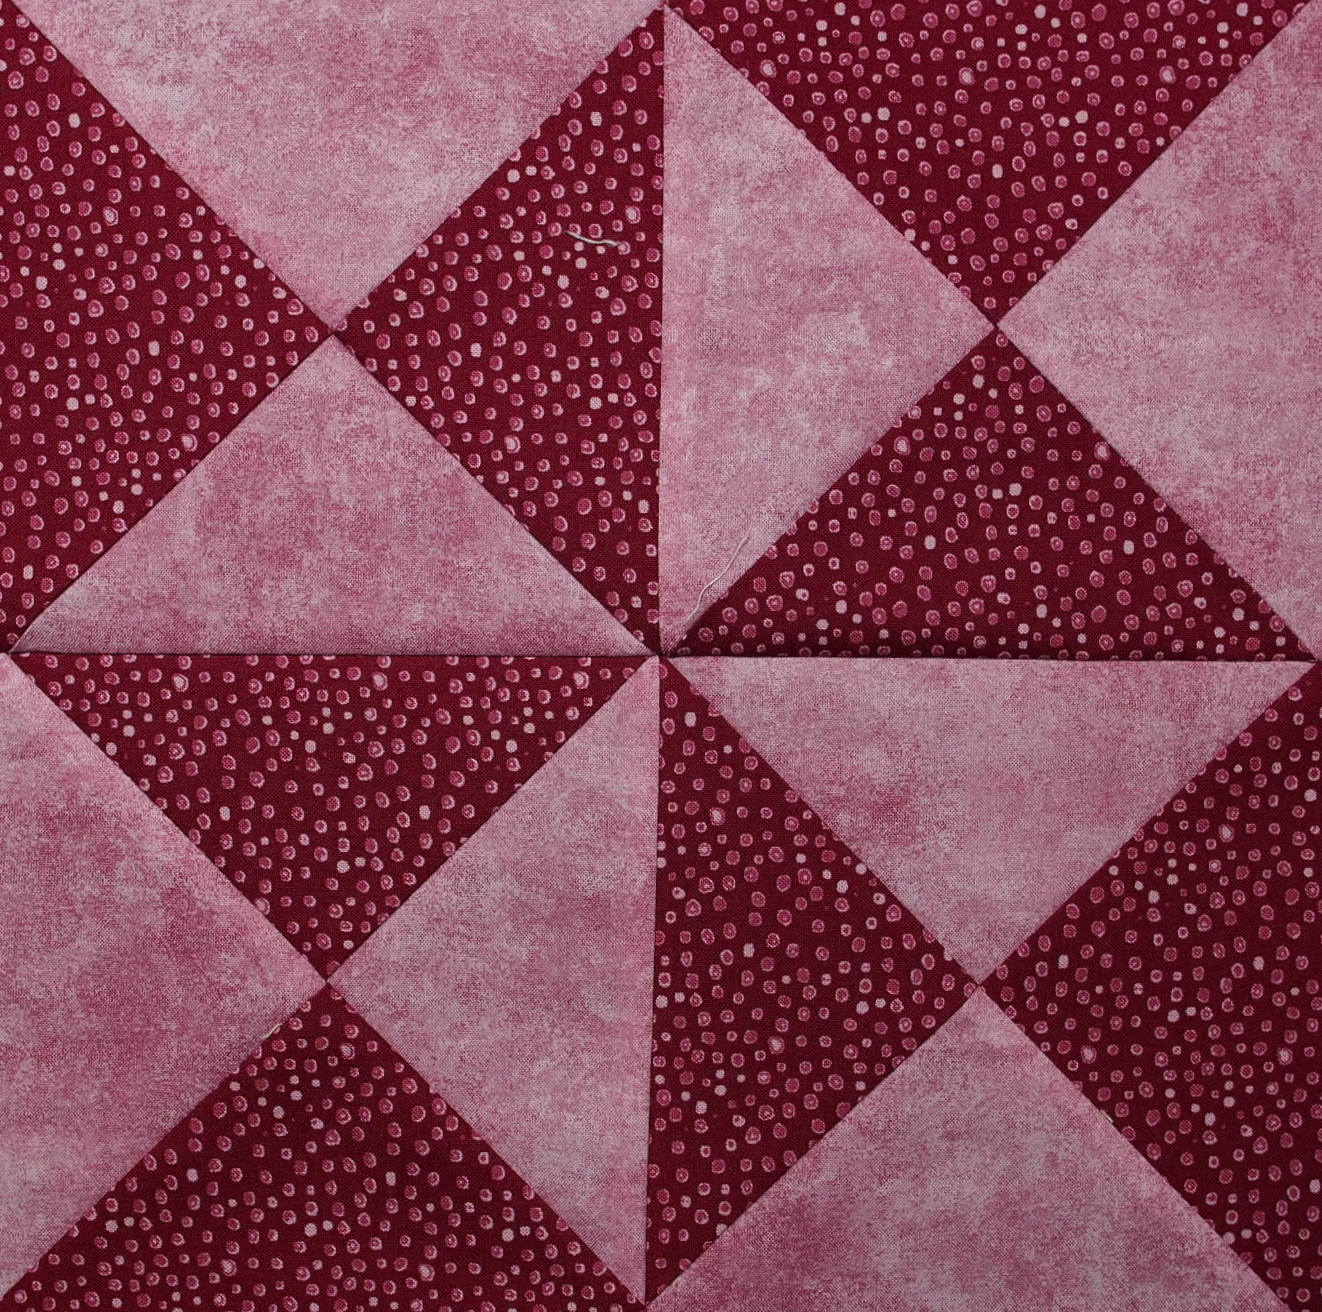 double pinwheel quilt block in red